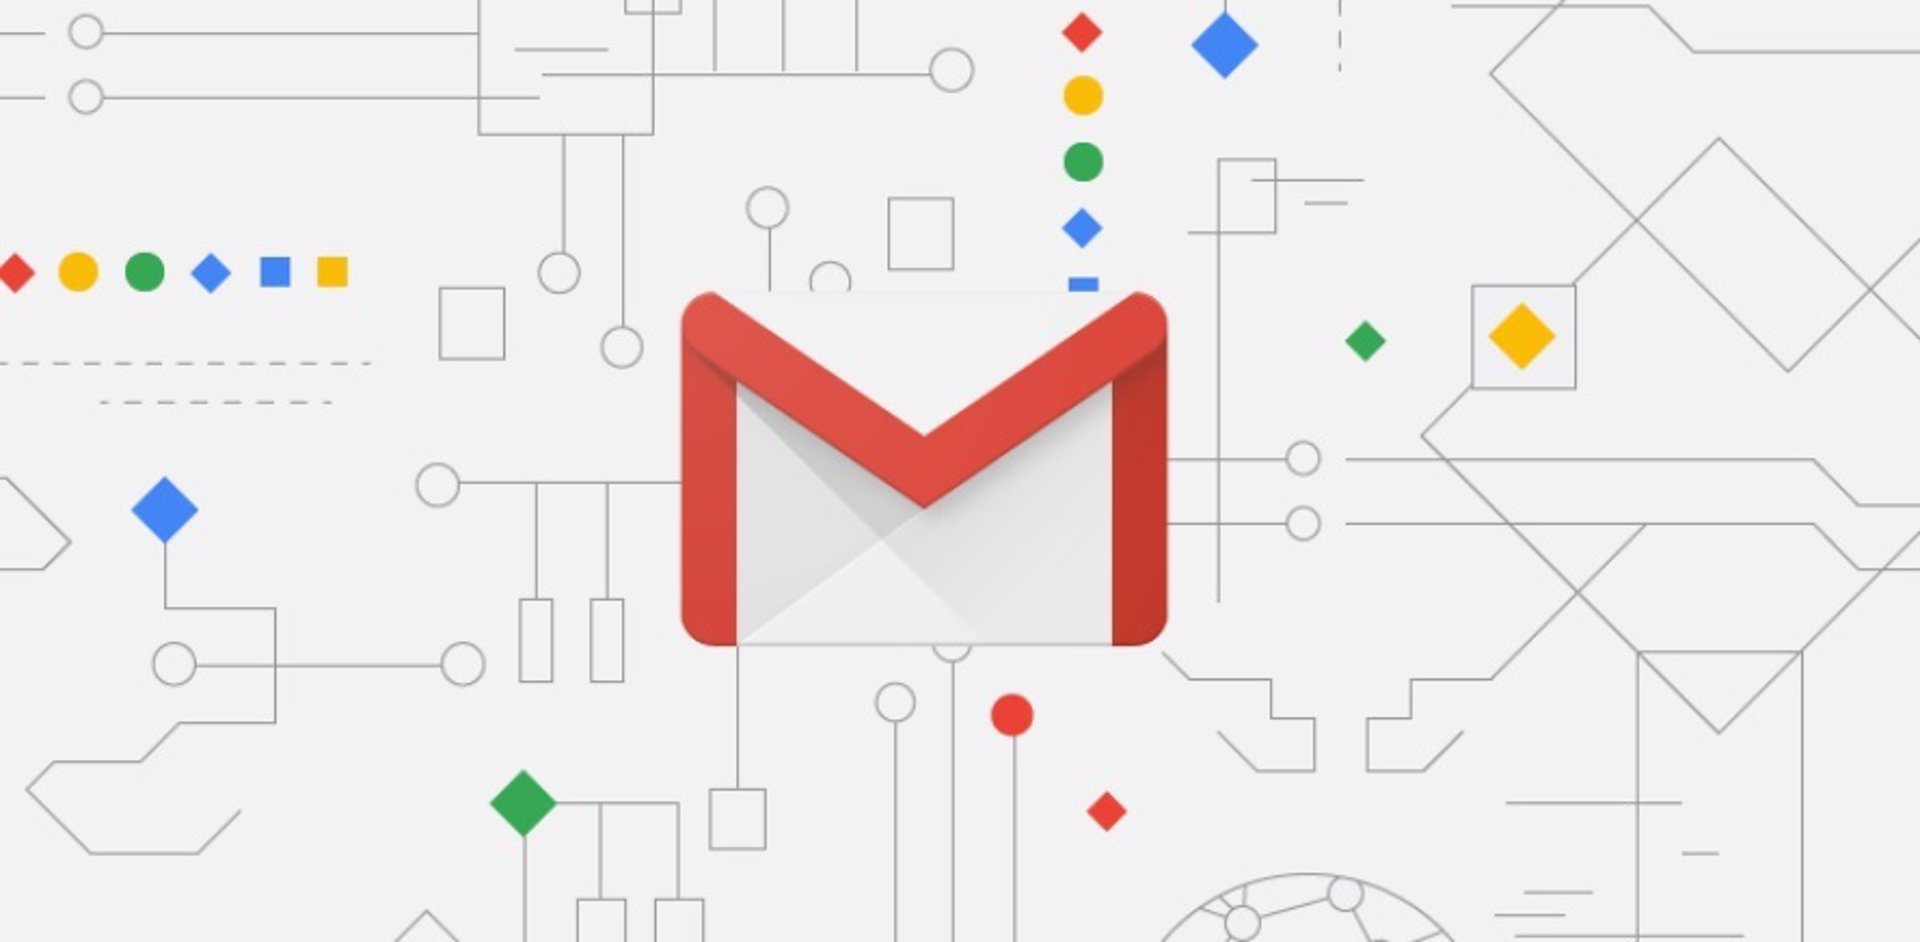 Gmail sufre retrasos en la recepción de correos electrónicos